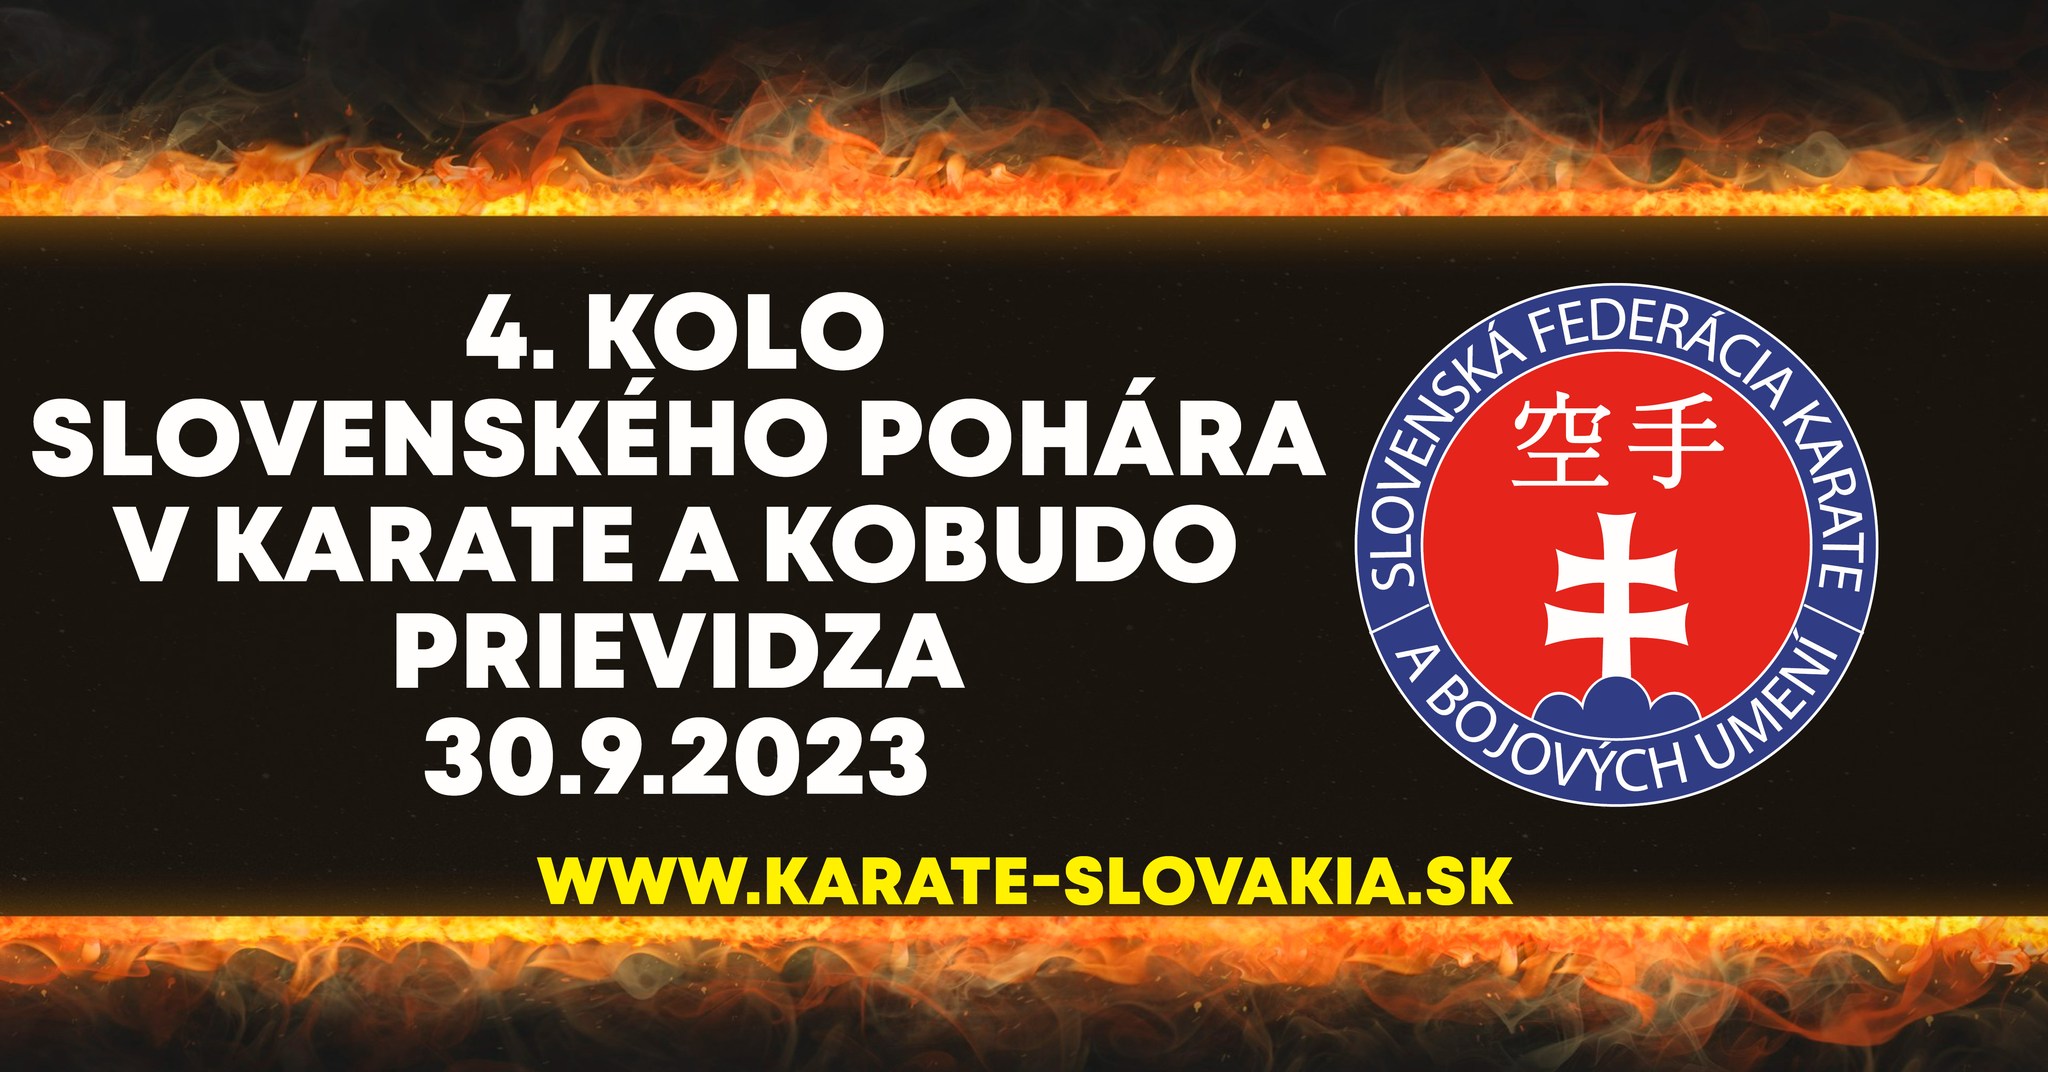 PRIEVIDZA CUP 2023 - 4. kolo Slovenského pohára v karate a kobudo